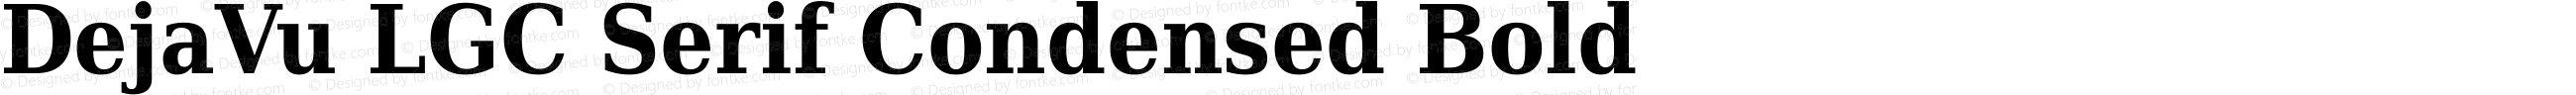 DejaVu LGC Serif Condensed Bold